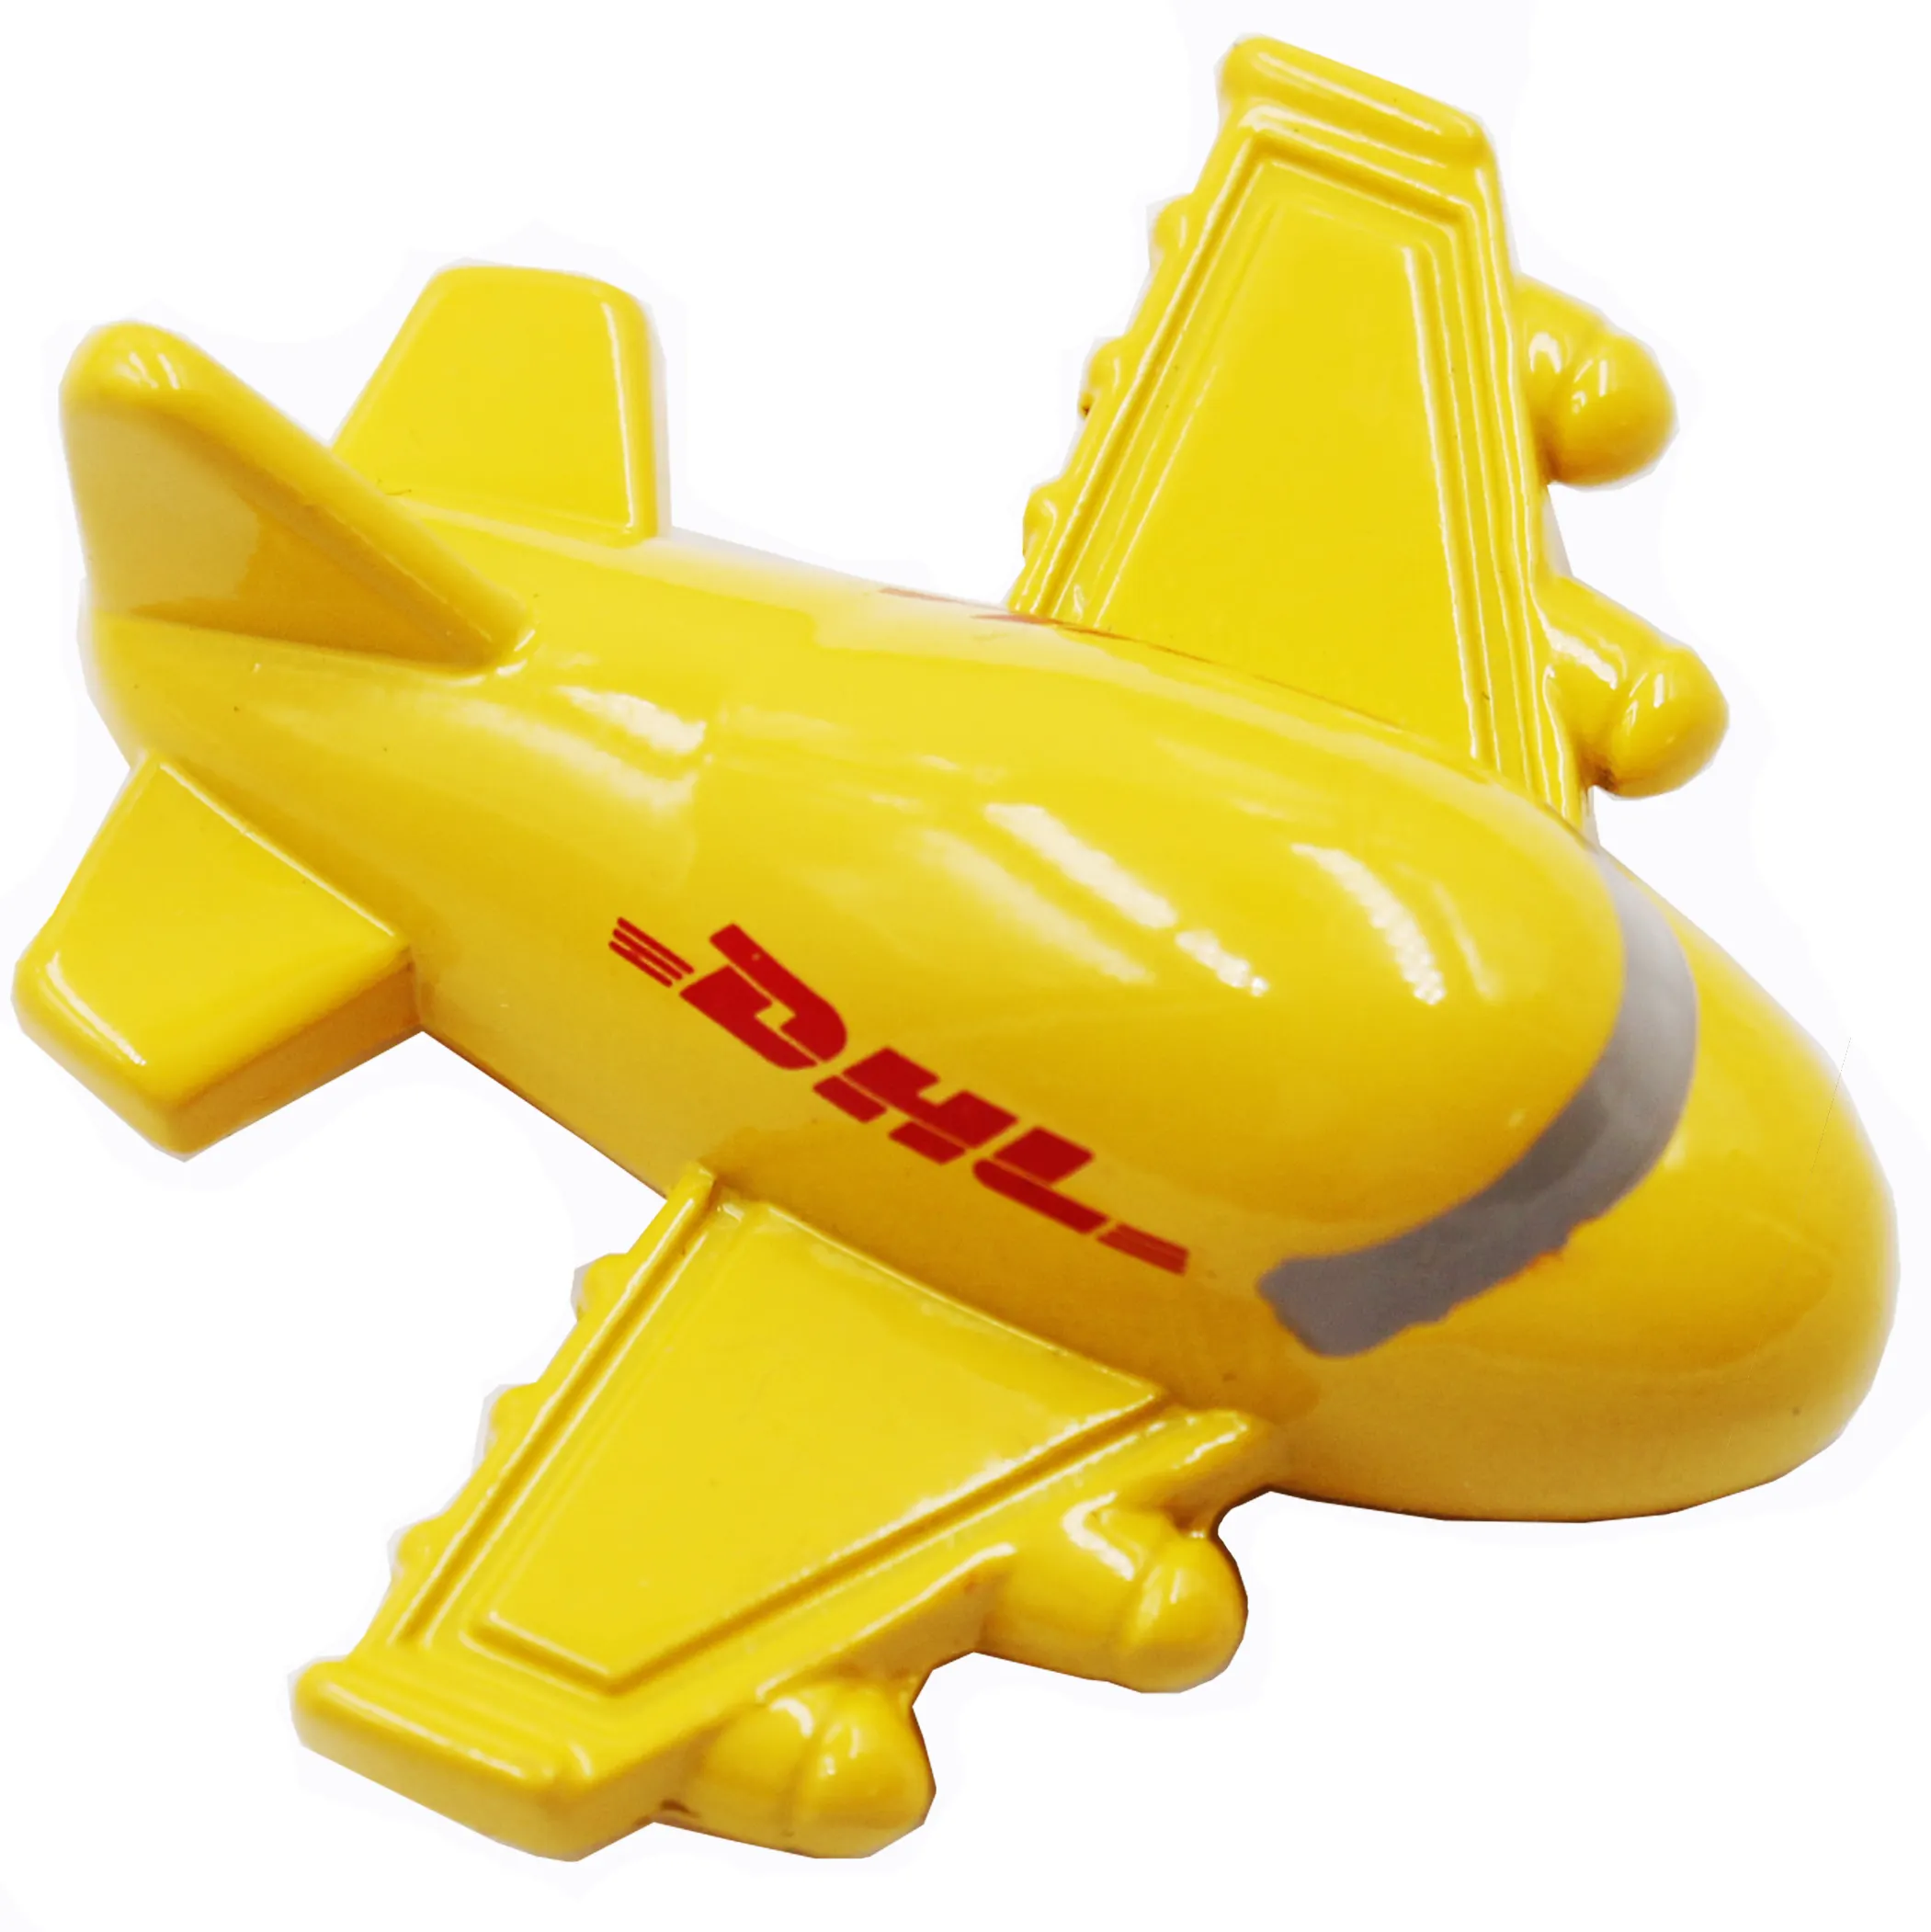 航空機配送会社プロモーションお土産ギフト航空機飛行機キーリング用黄色3D飛行機キーホルダー